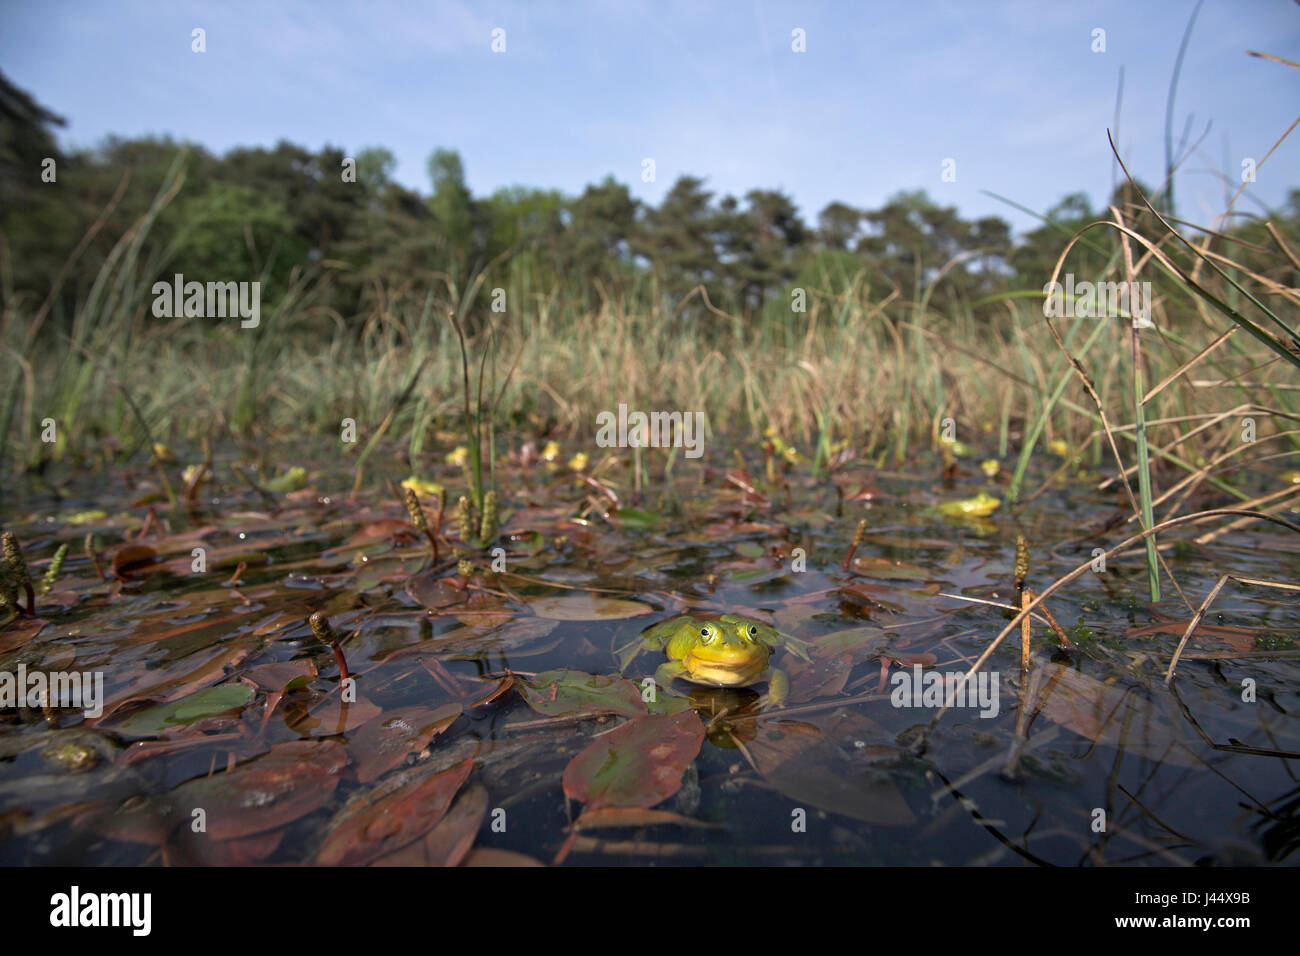 Panoramica di un coro maschile di poolfrogs in primavera i maschi della rana piscina diventa di colore giallo durante la stagione di riproduzione Foto Stock